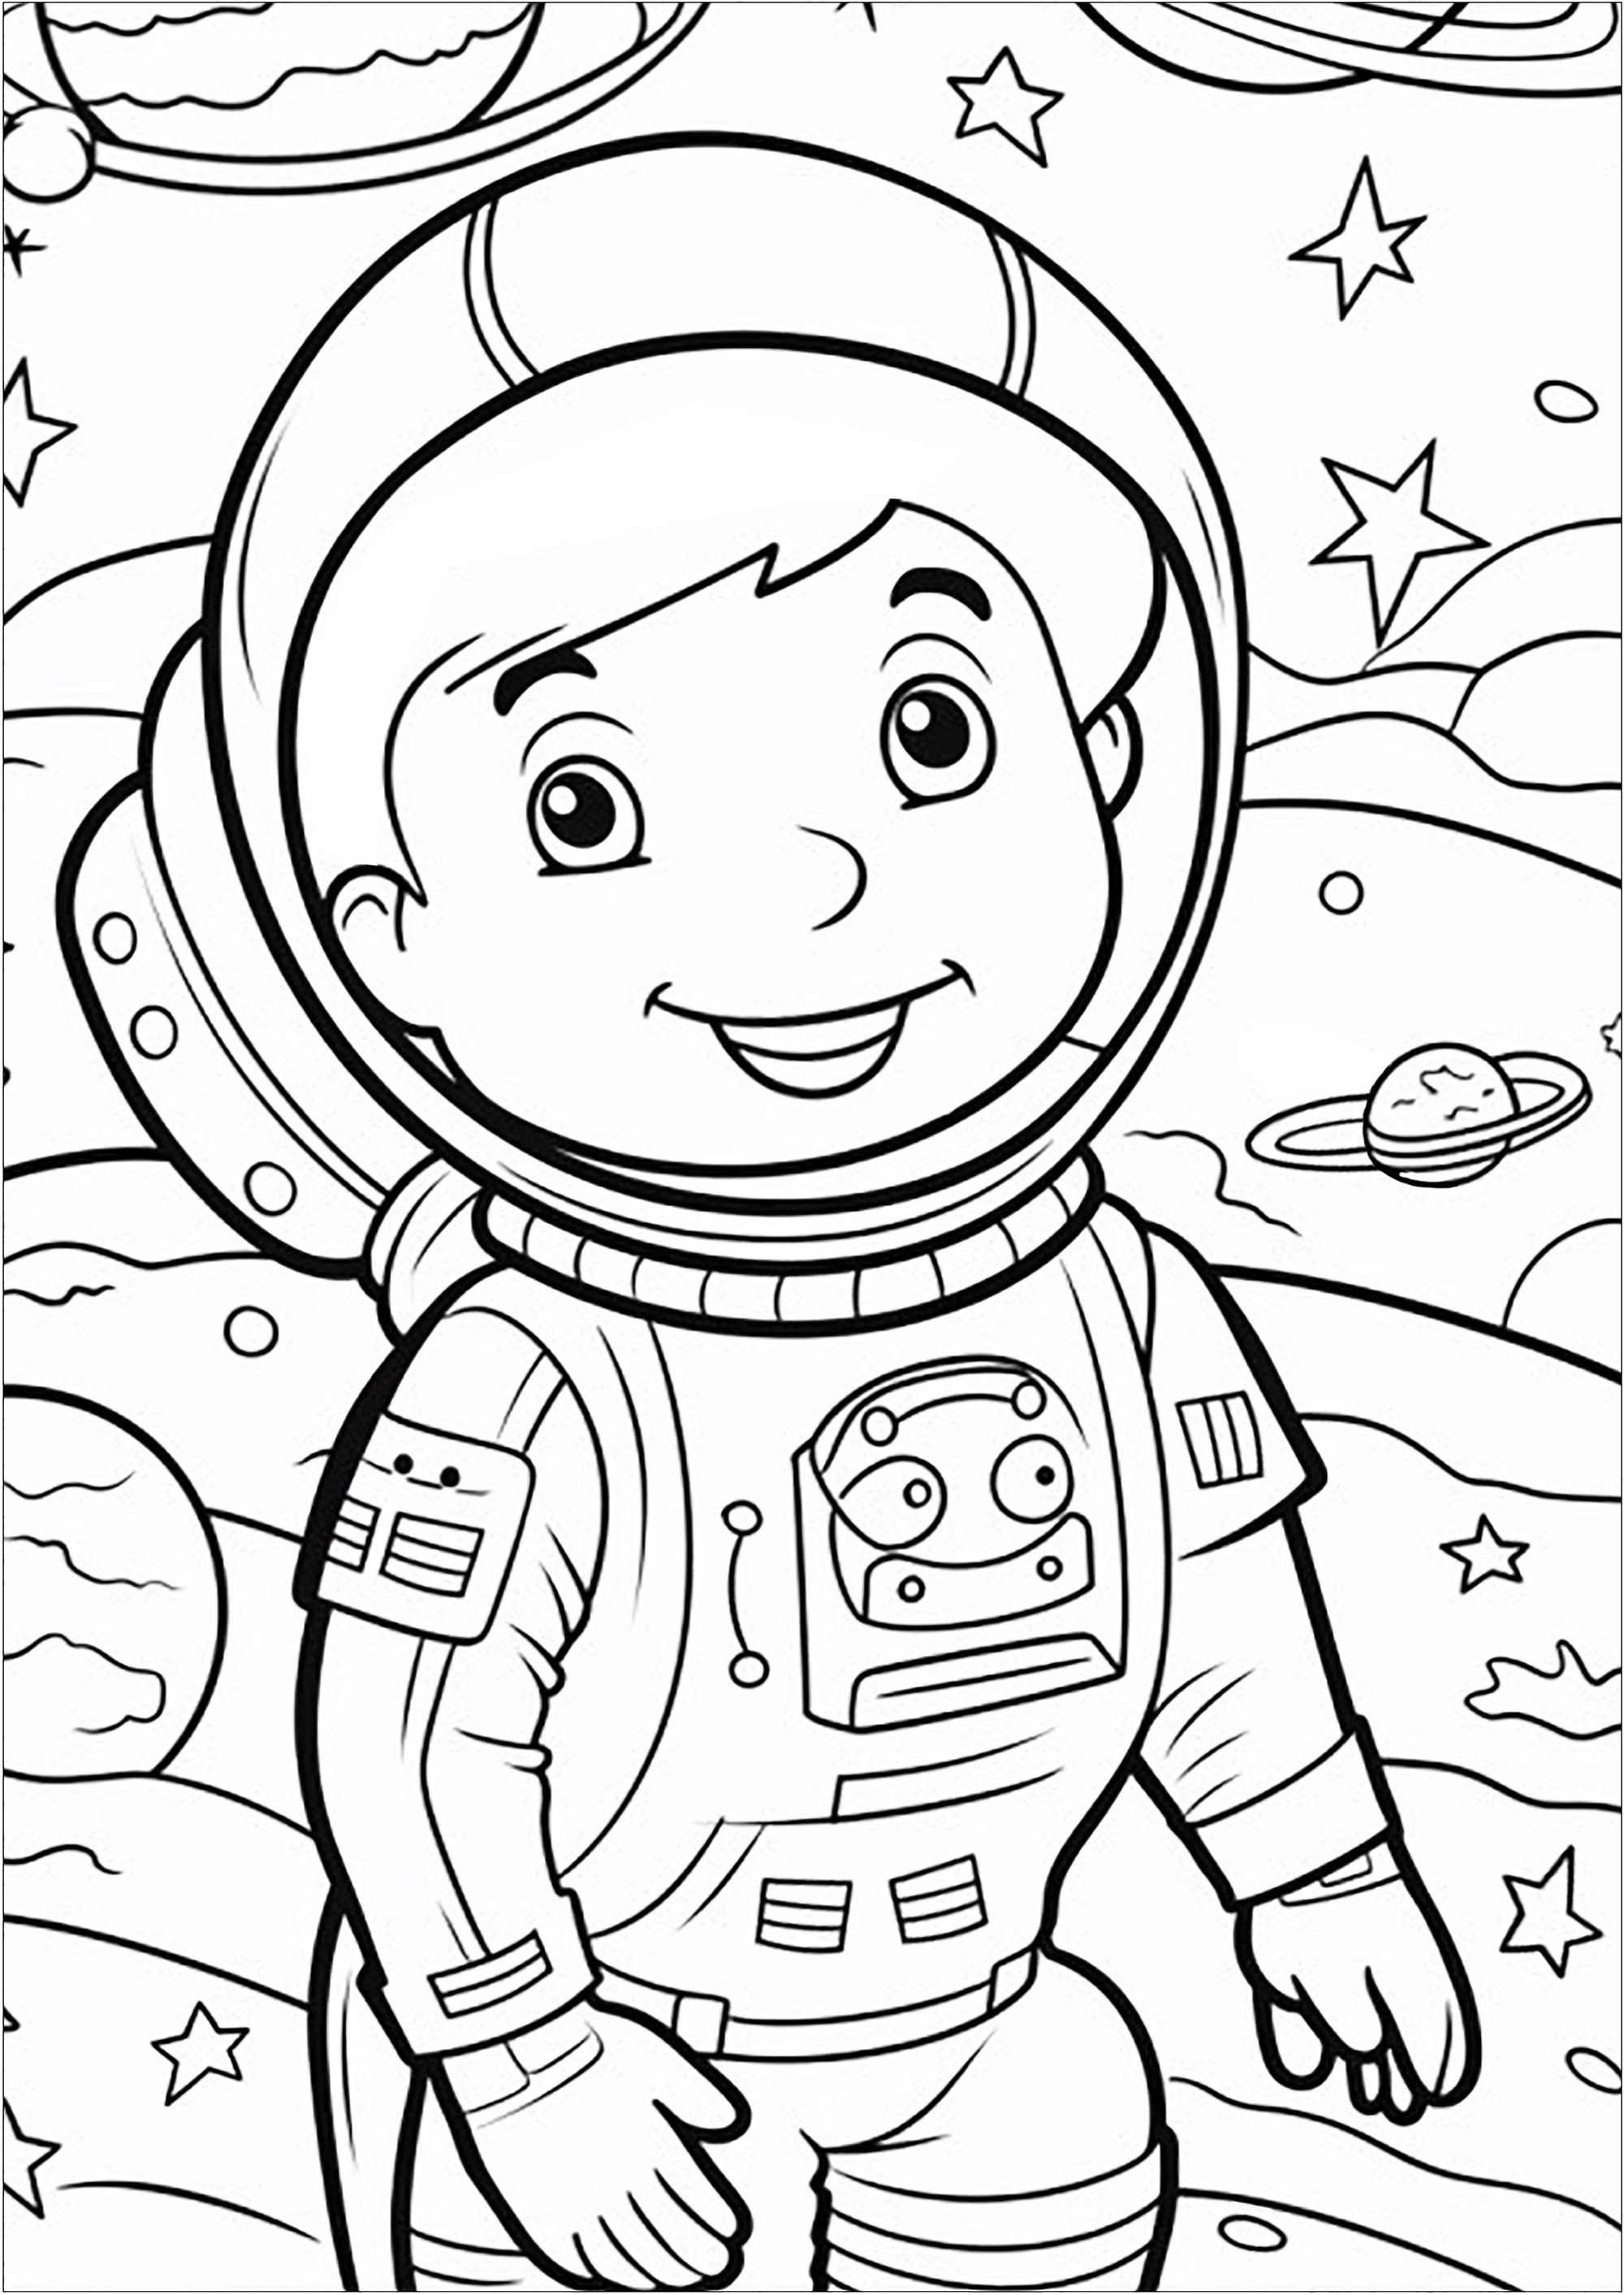 Jeune astronaute entouré de planètes et d'étoiles. Ce coloriage est parfait pour les enfants qui rêvent de l'espace ! Il représente un petit astronaute qui explore l'univers.